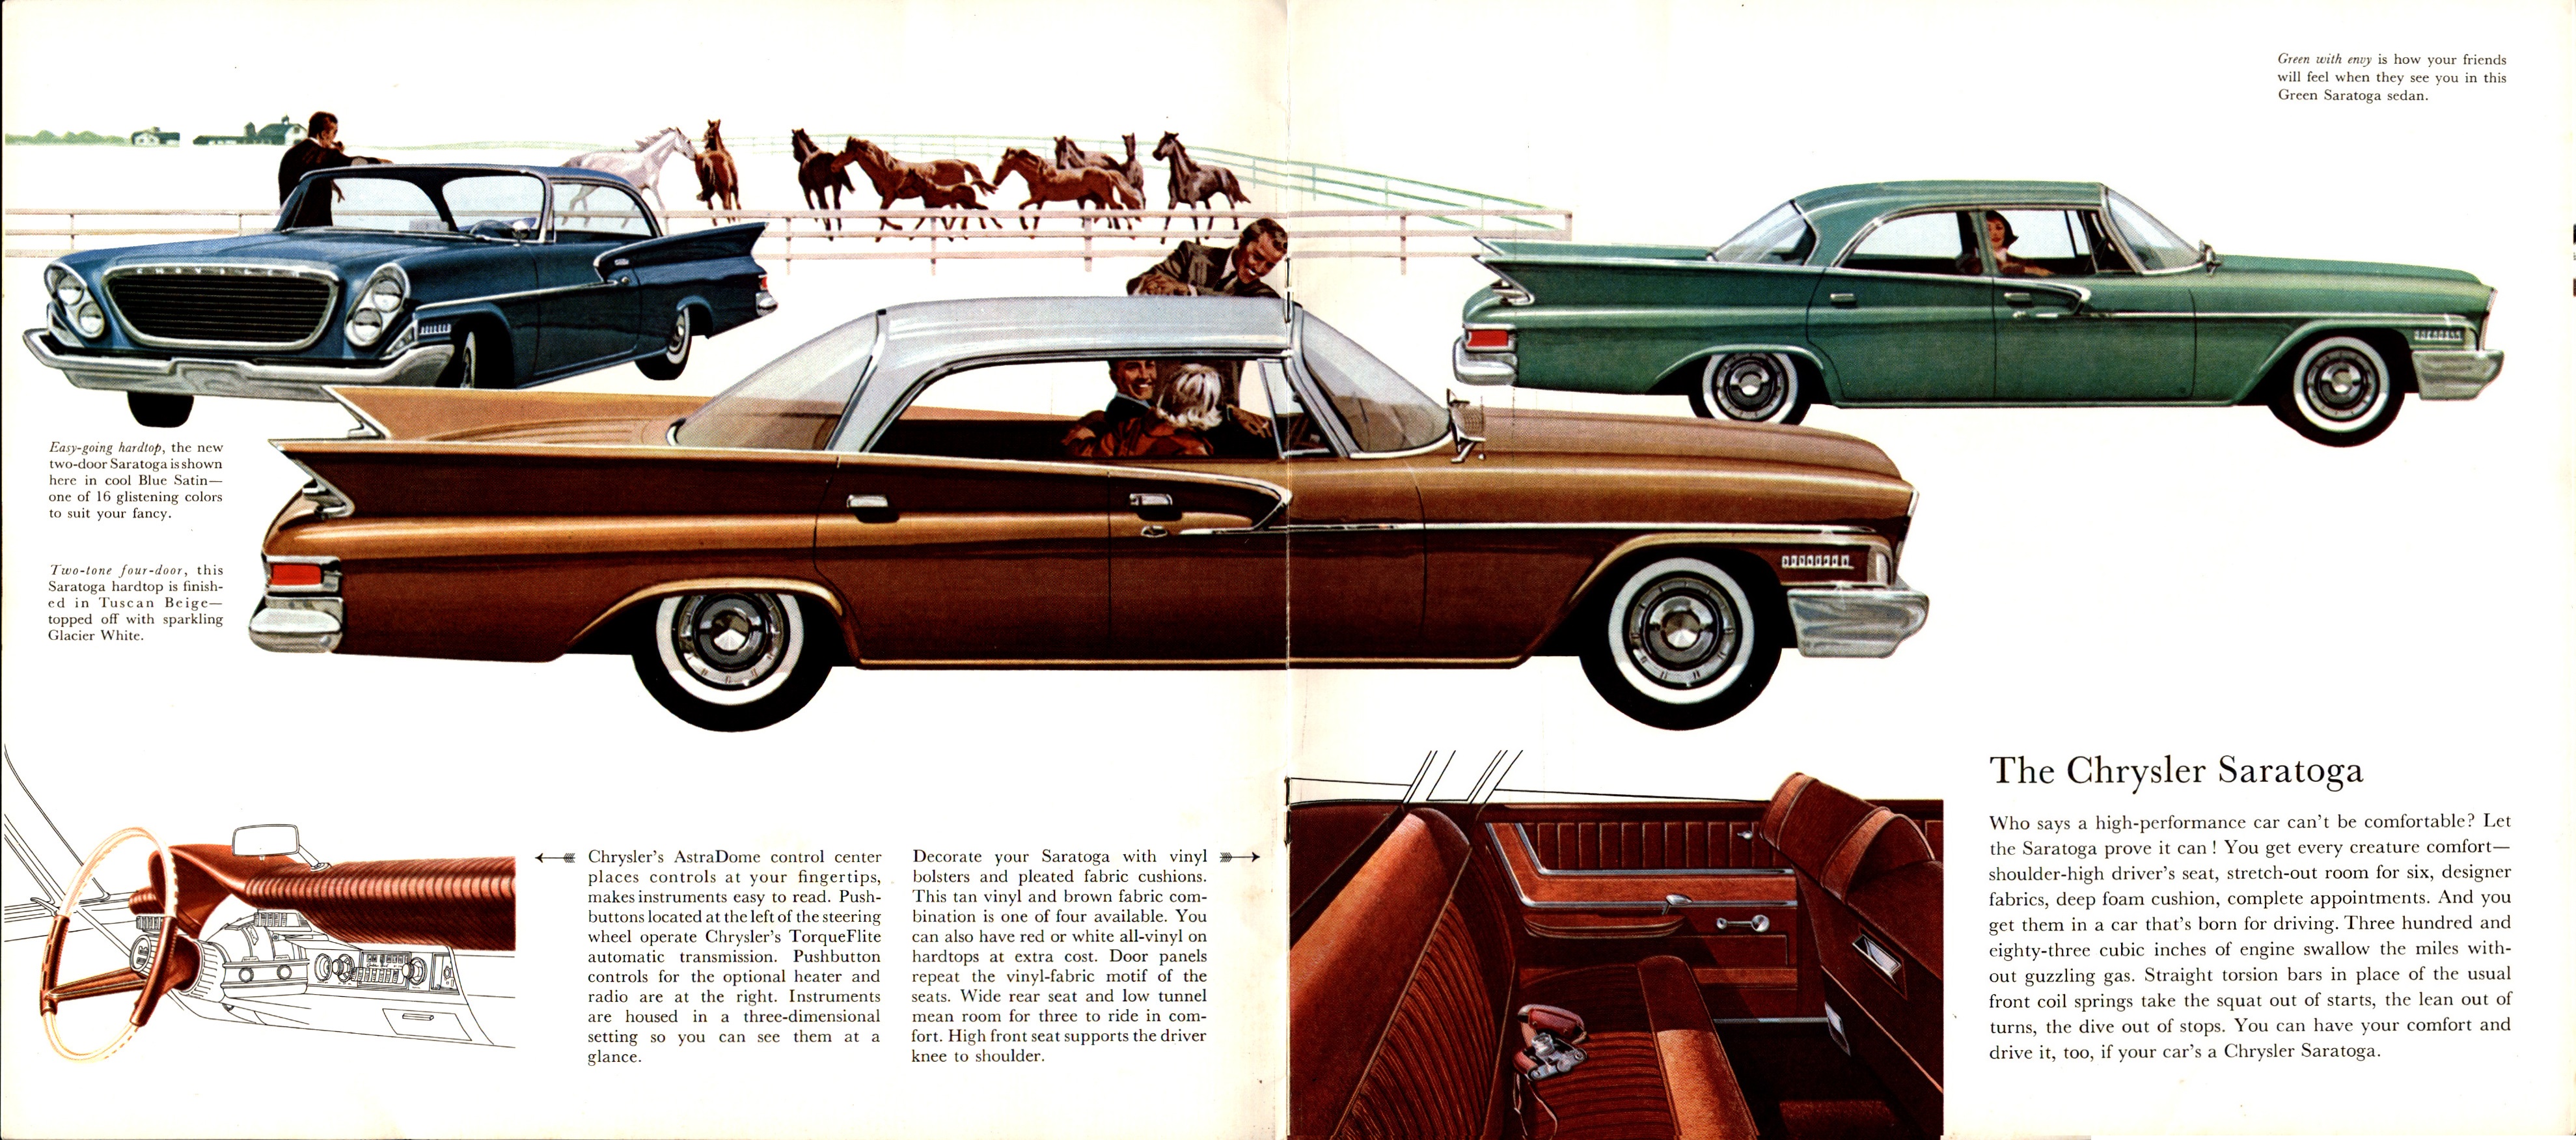 1961 Chrysler Full Line Brochure  (Cdn) 08-09